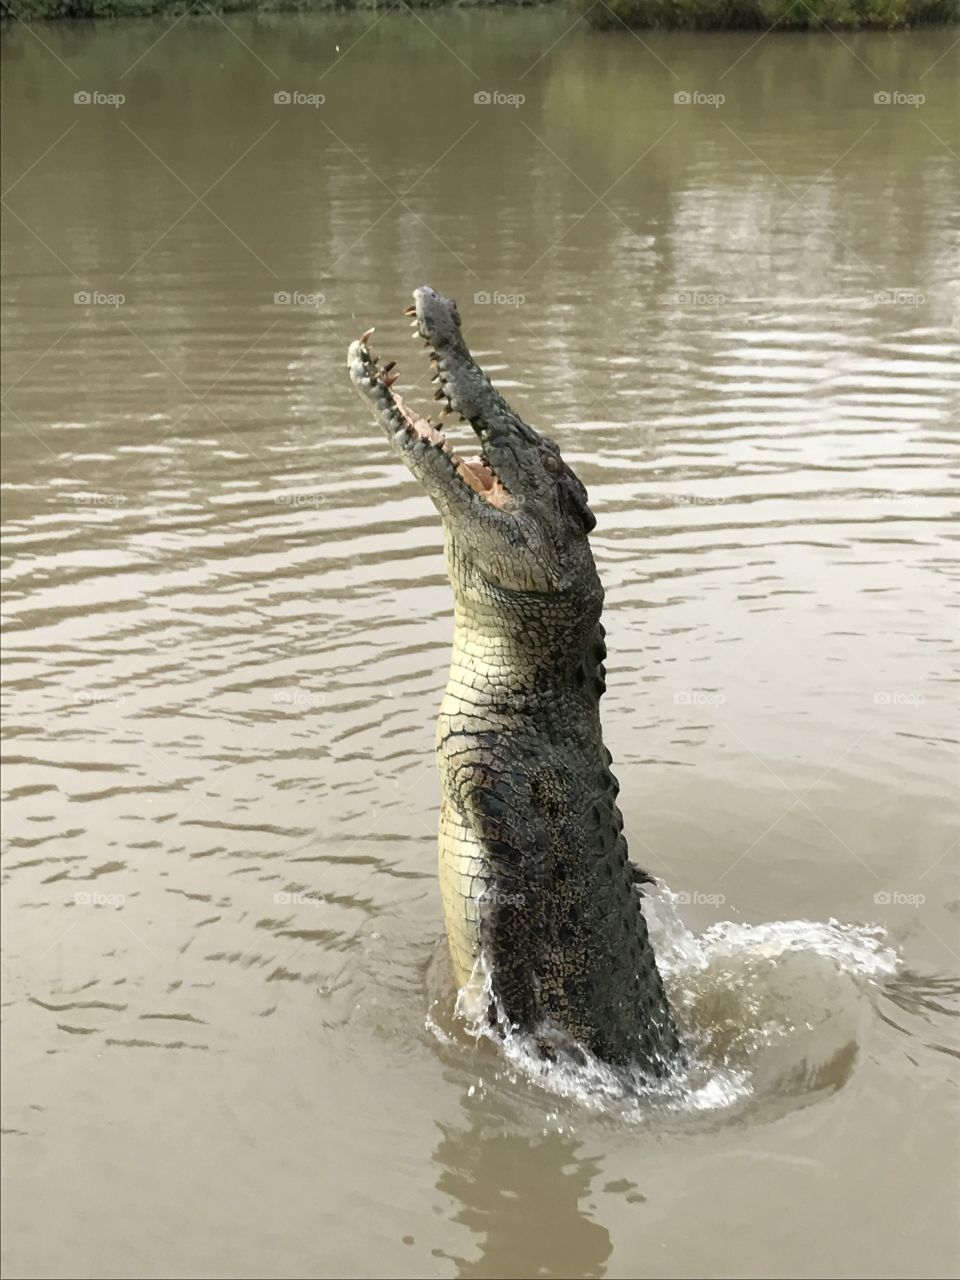 Massive jumping crocodile in Northern Australia